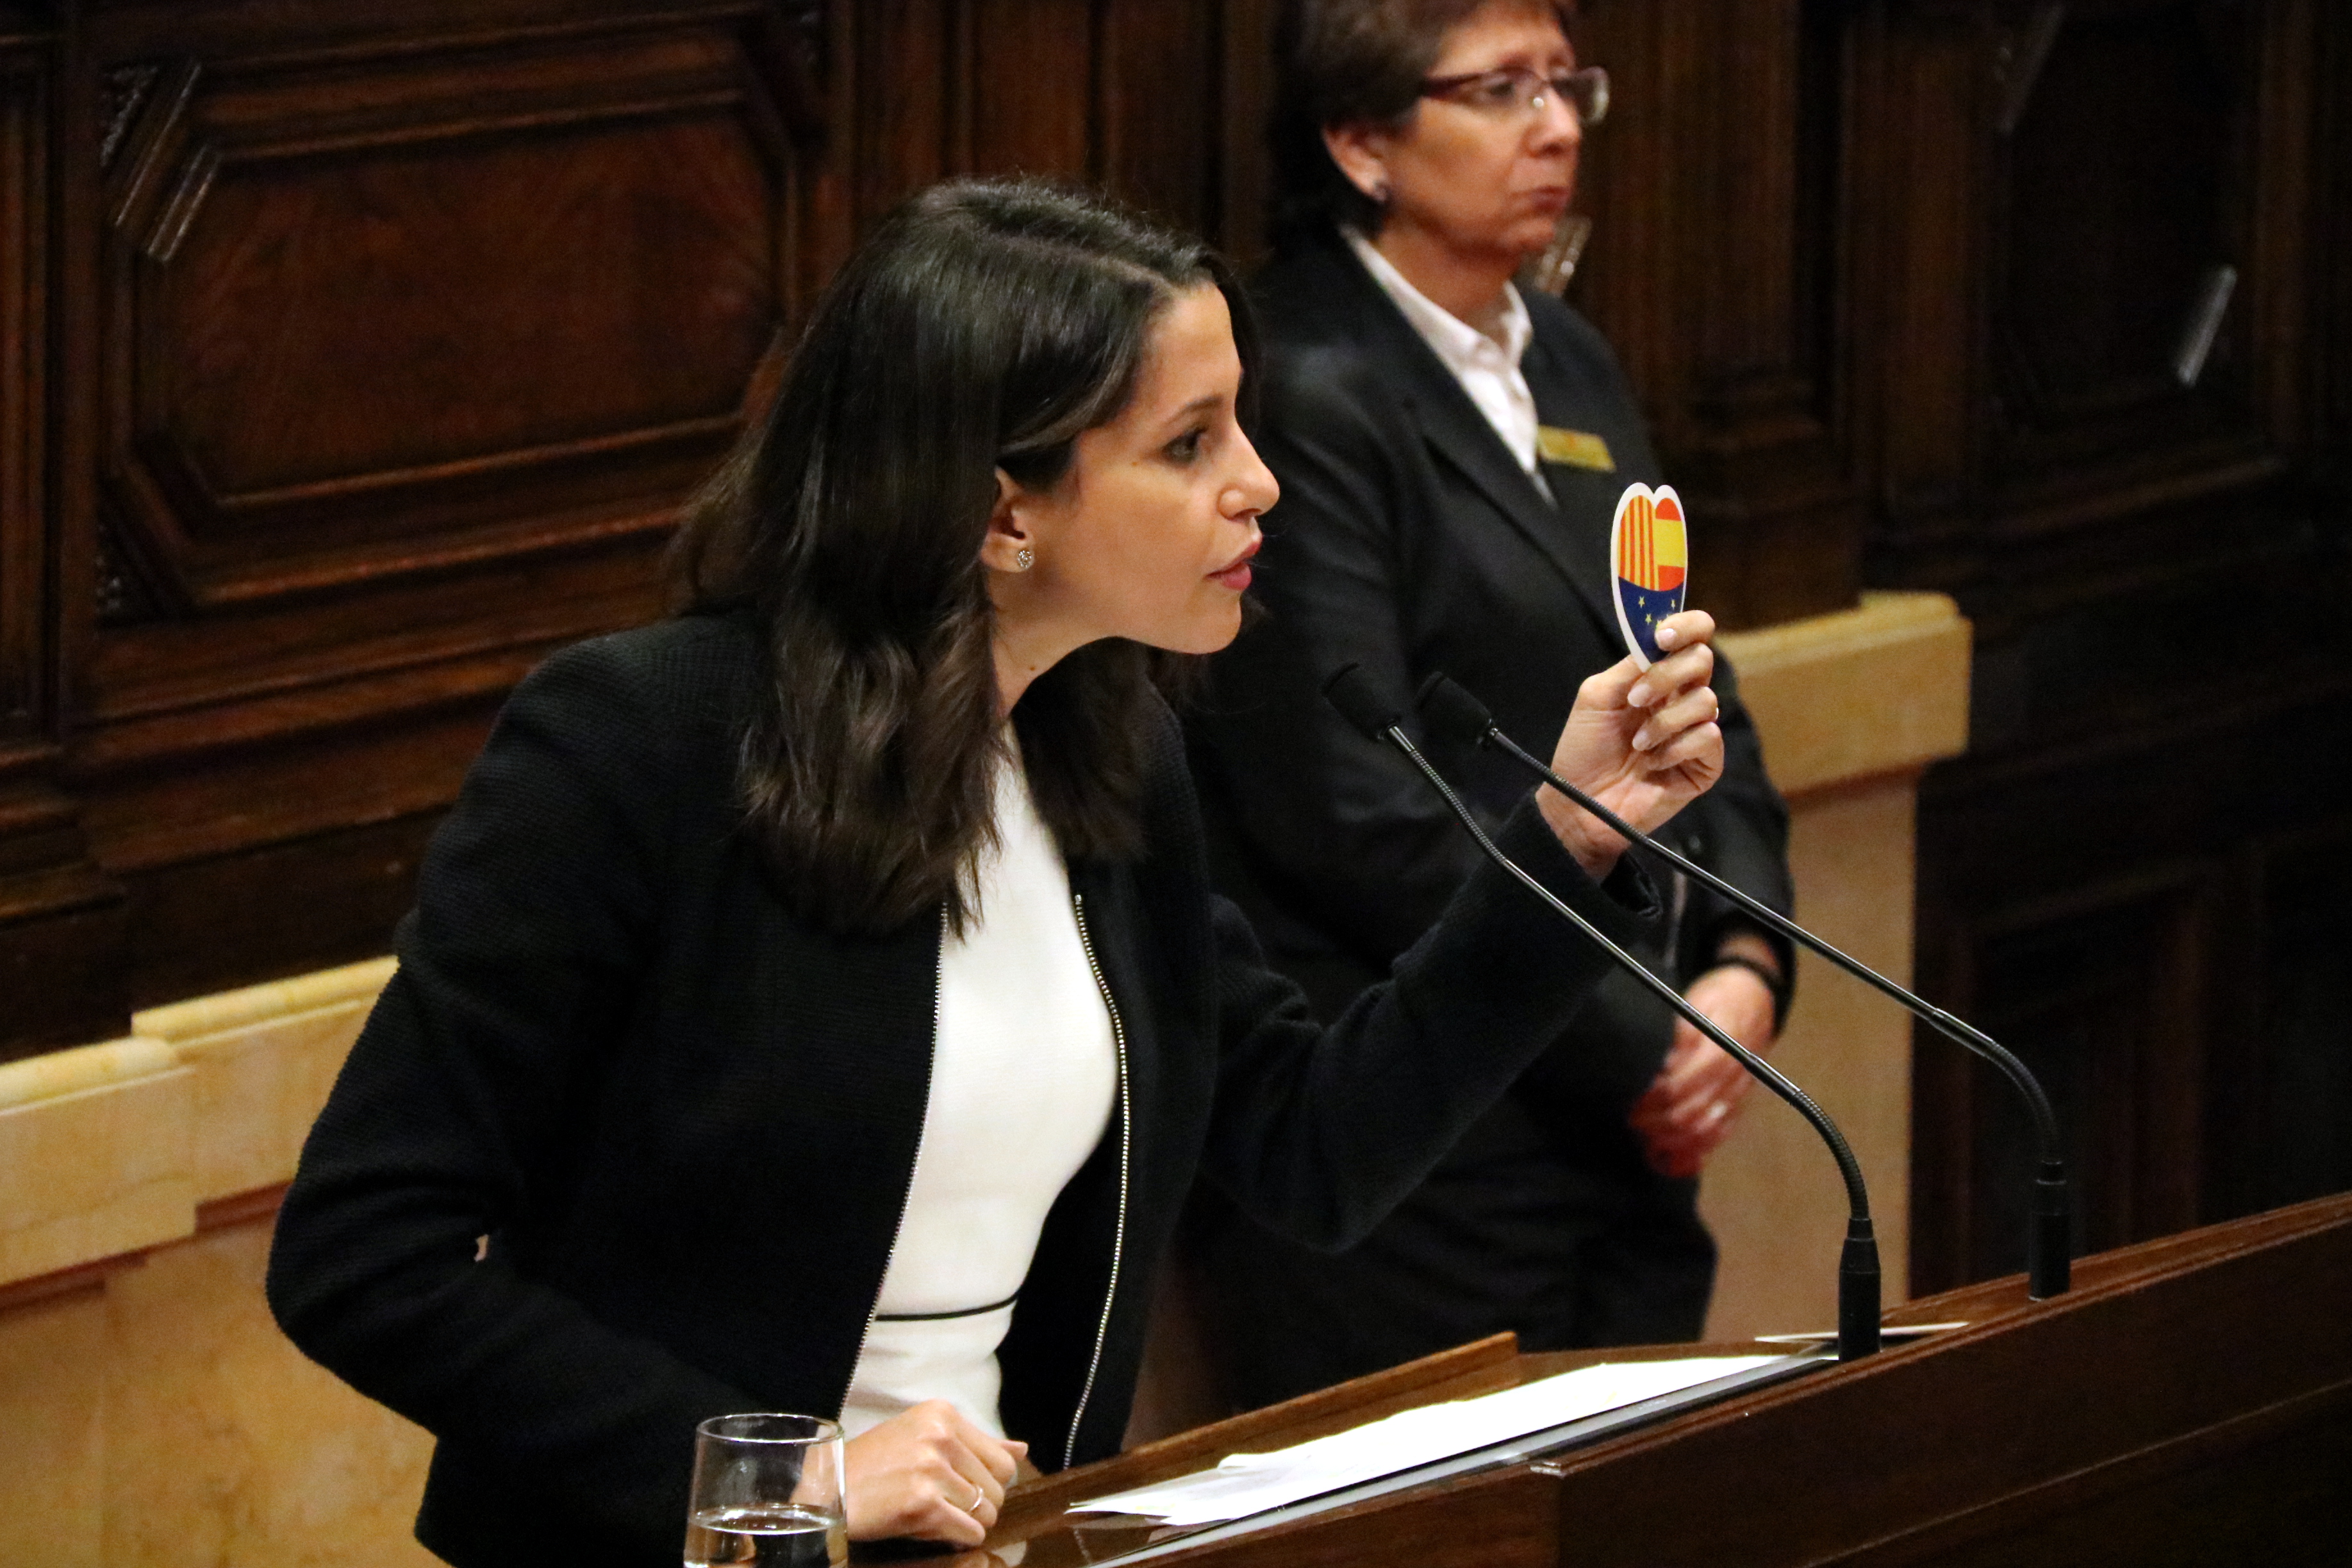 The head of opposition, Inés Arrimadas